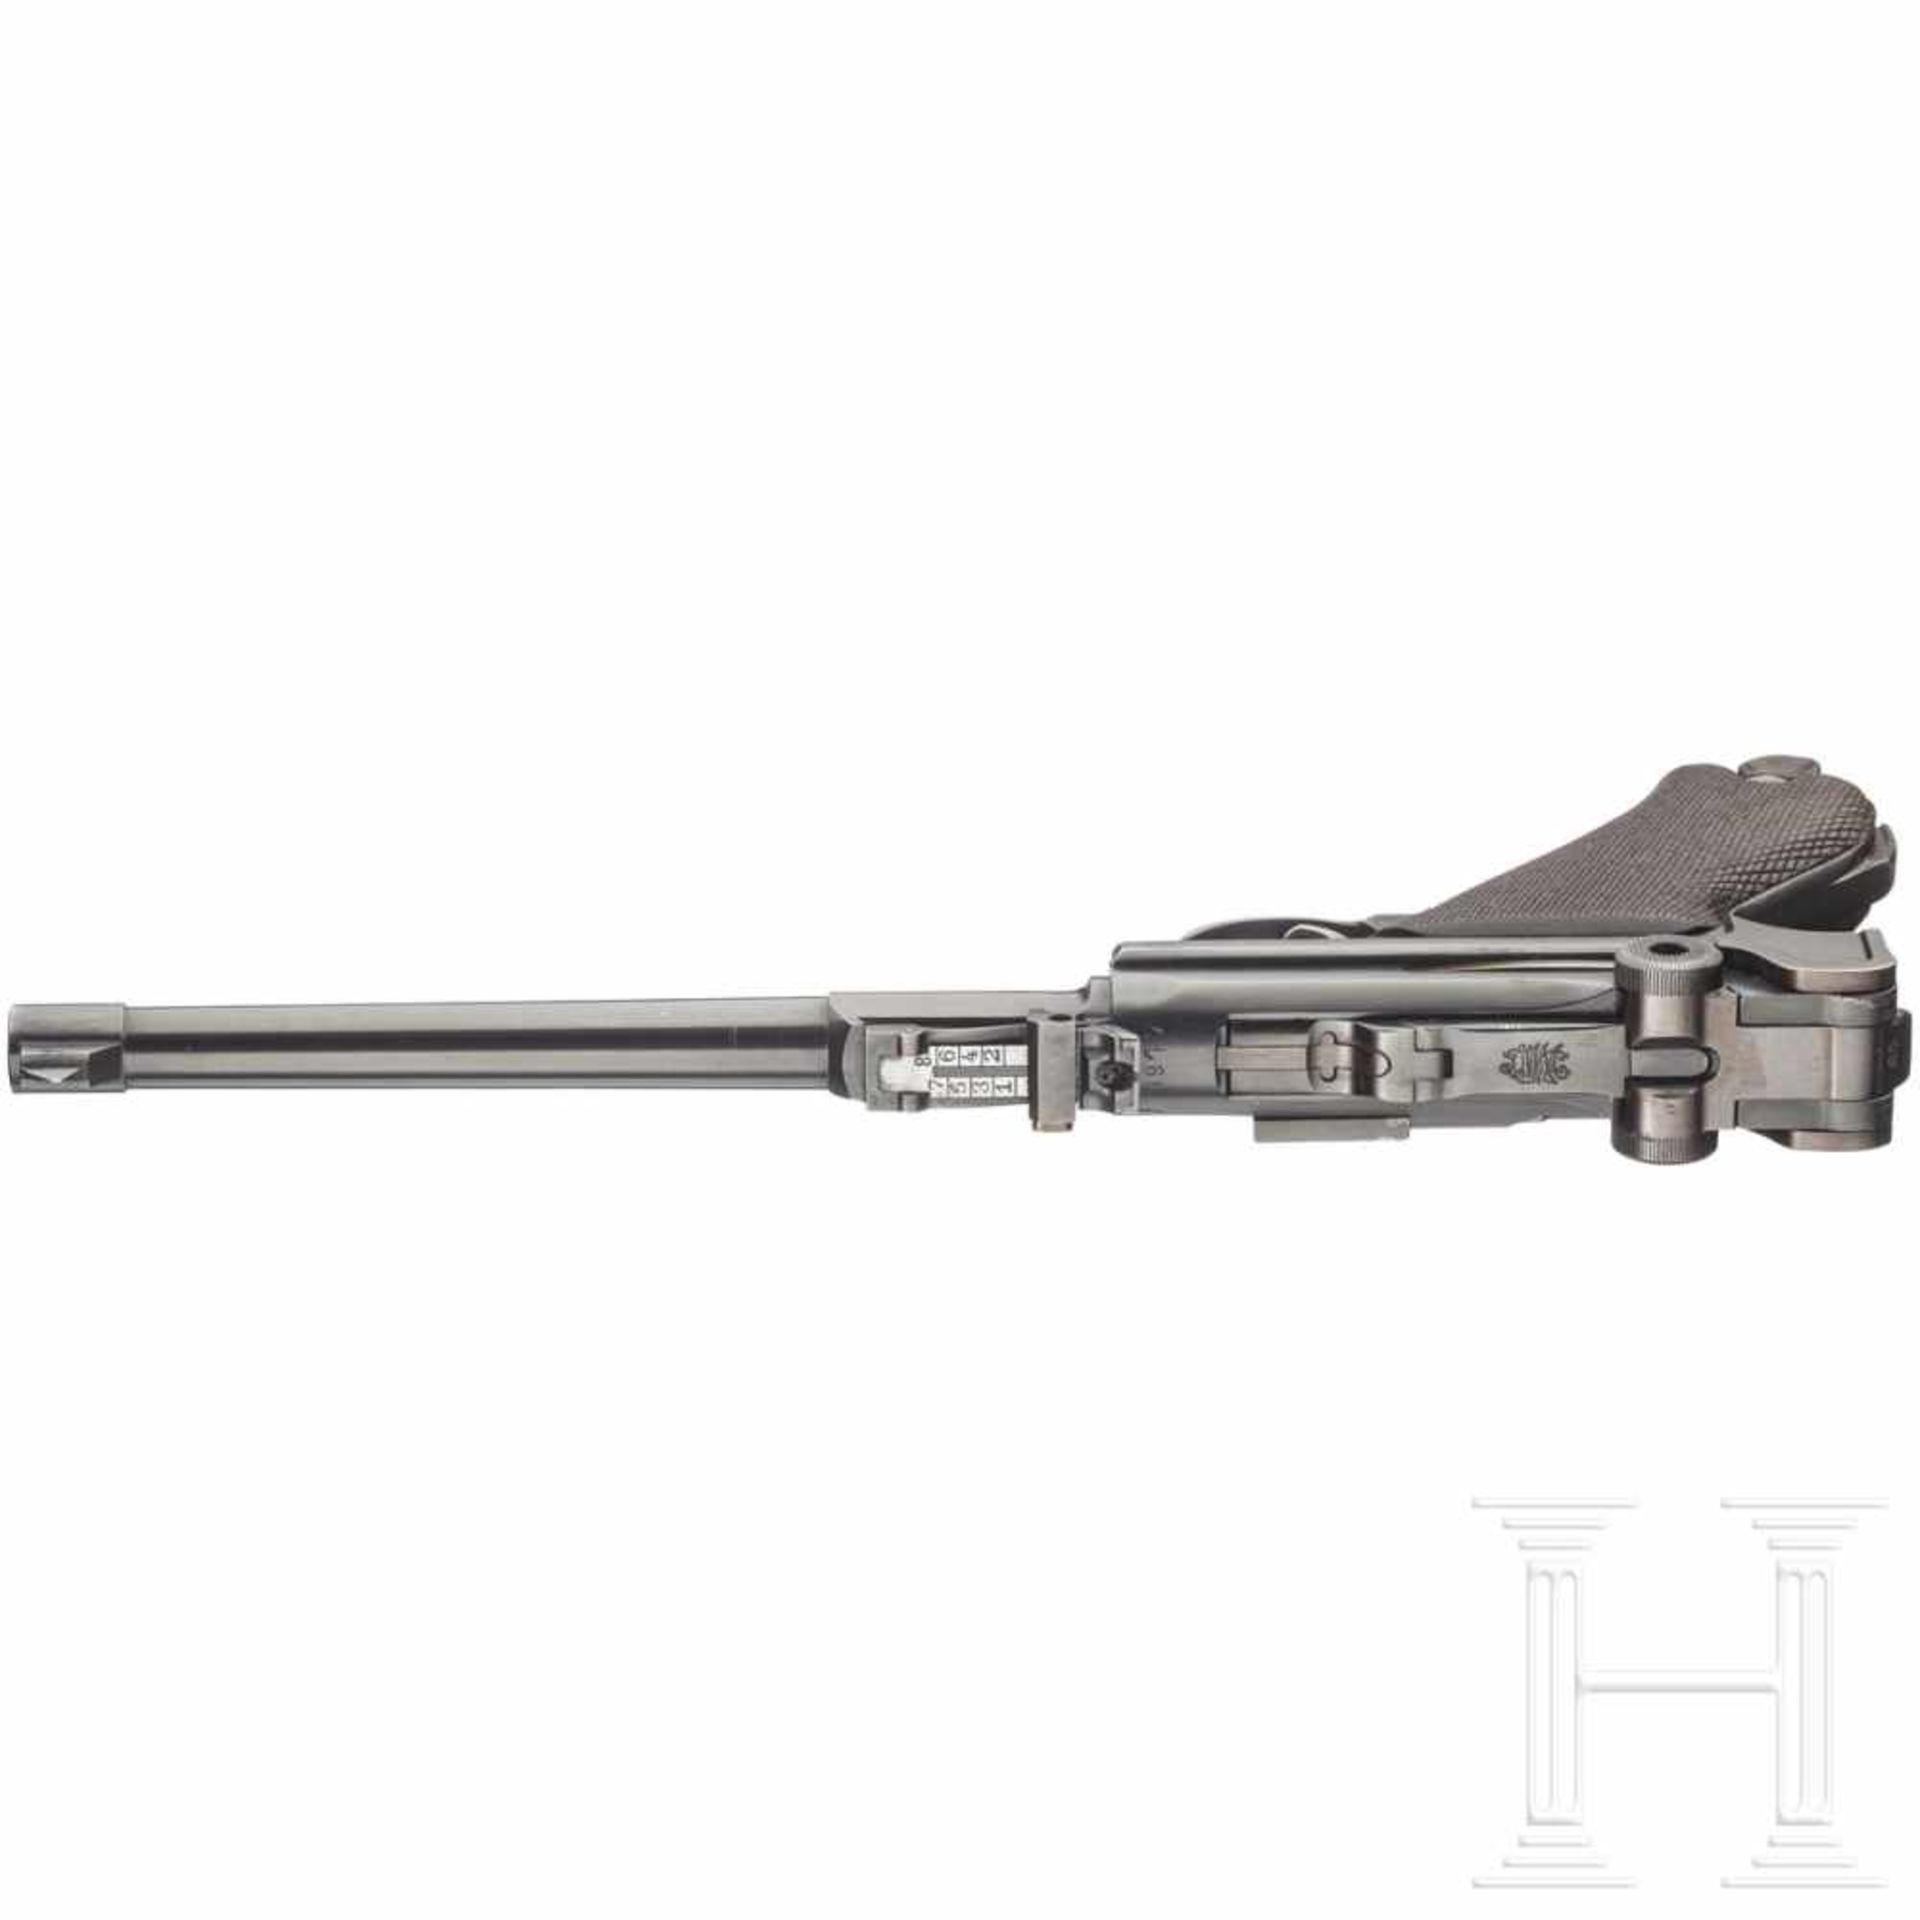 Lange Pistole 08, DWM 1917Kal. 9mm Luger, Nr. 2165n, Nicht nummerngleich. Spiegelblanker, - Bild 3 aus 3